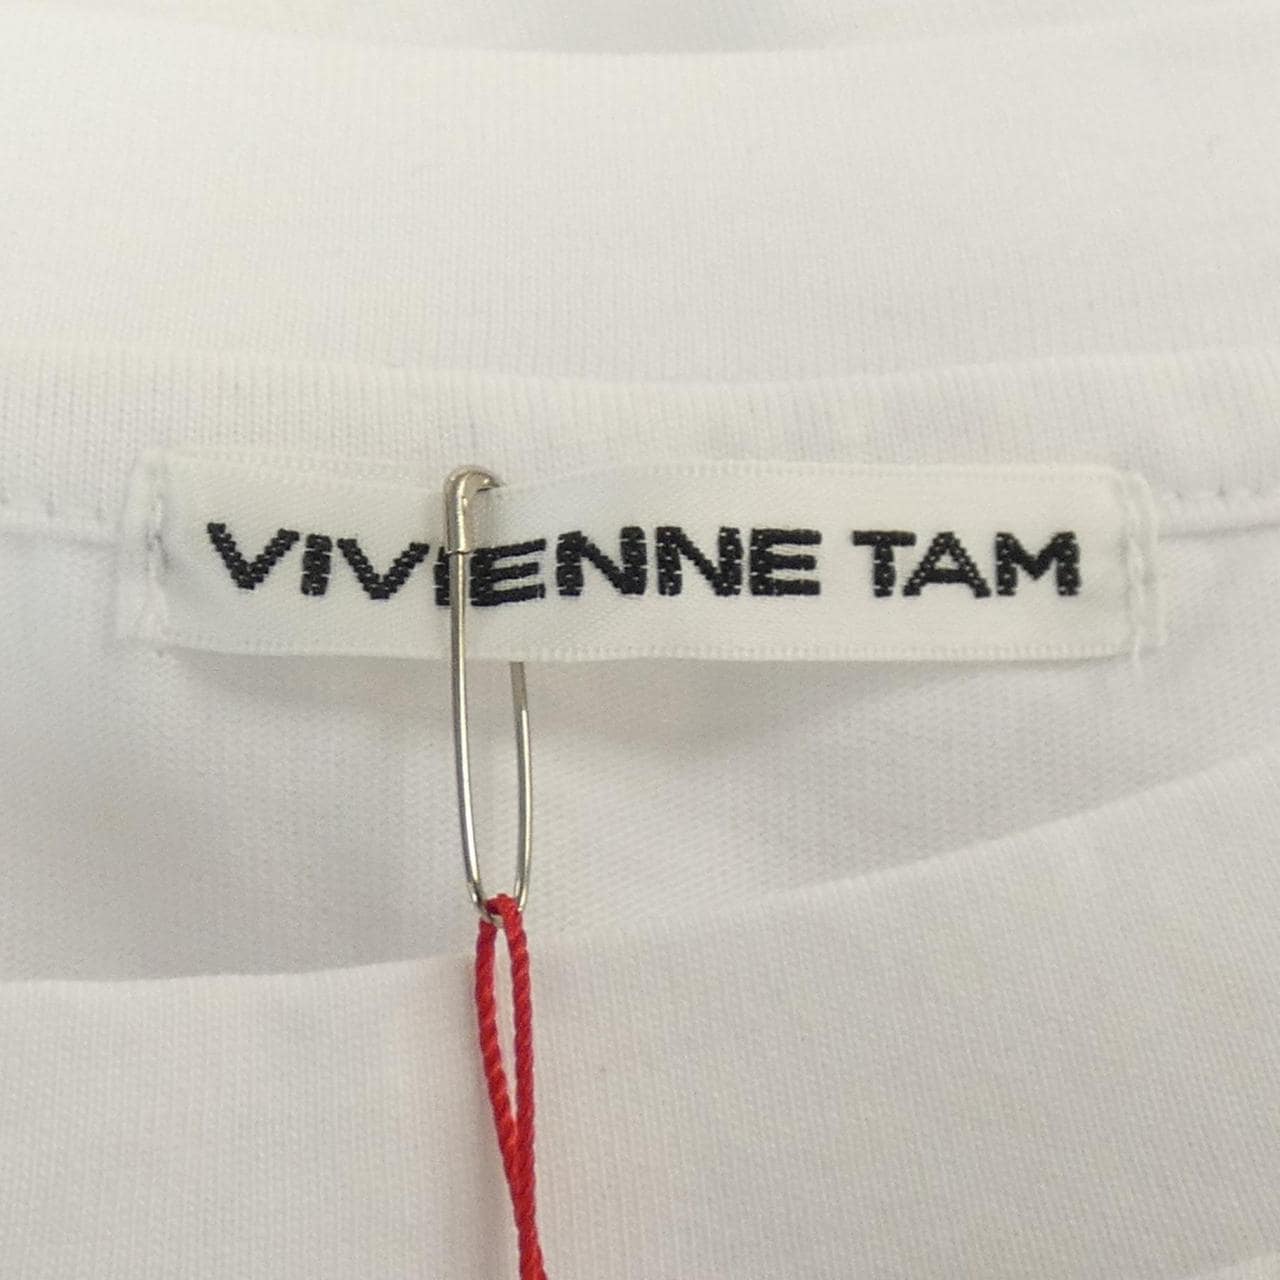 ヴィヴィアンタム VIVIENNE TAM Tシャツ